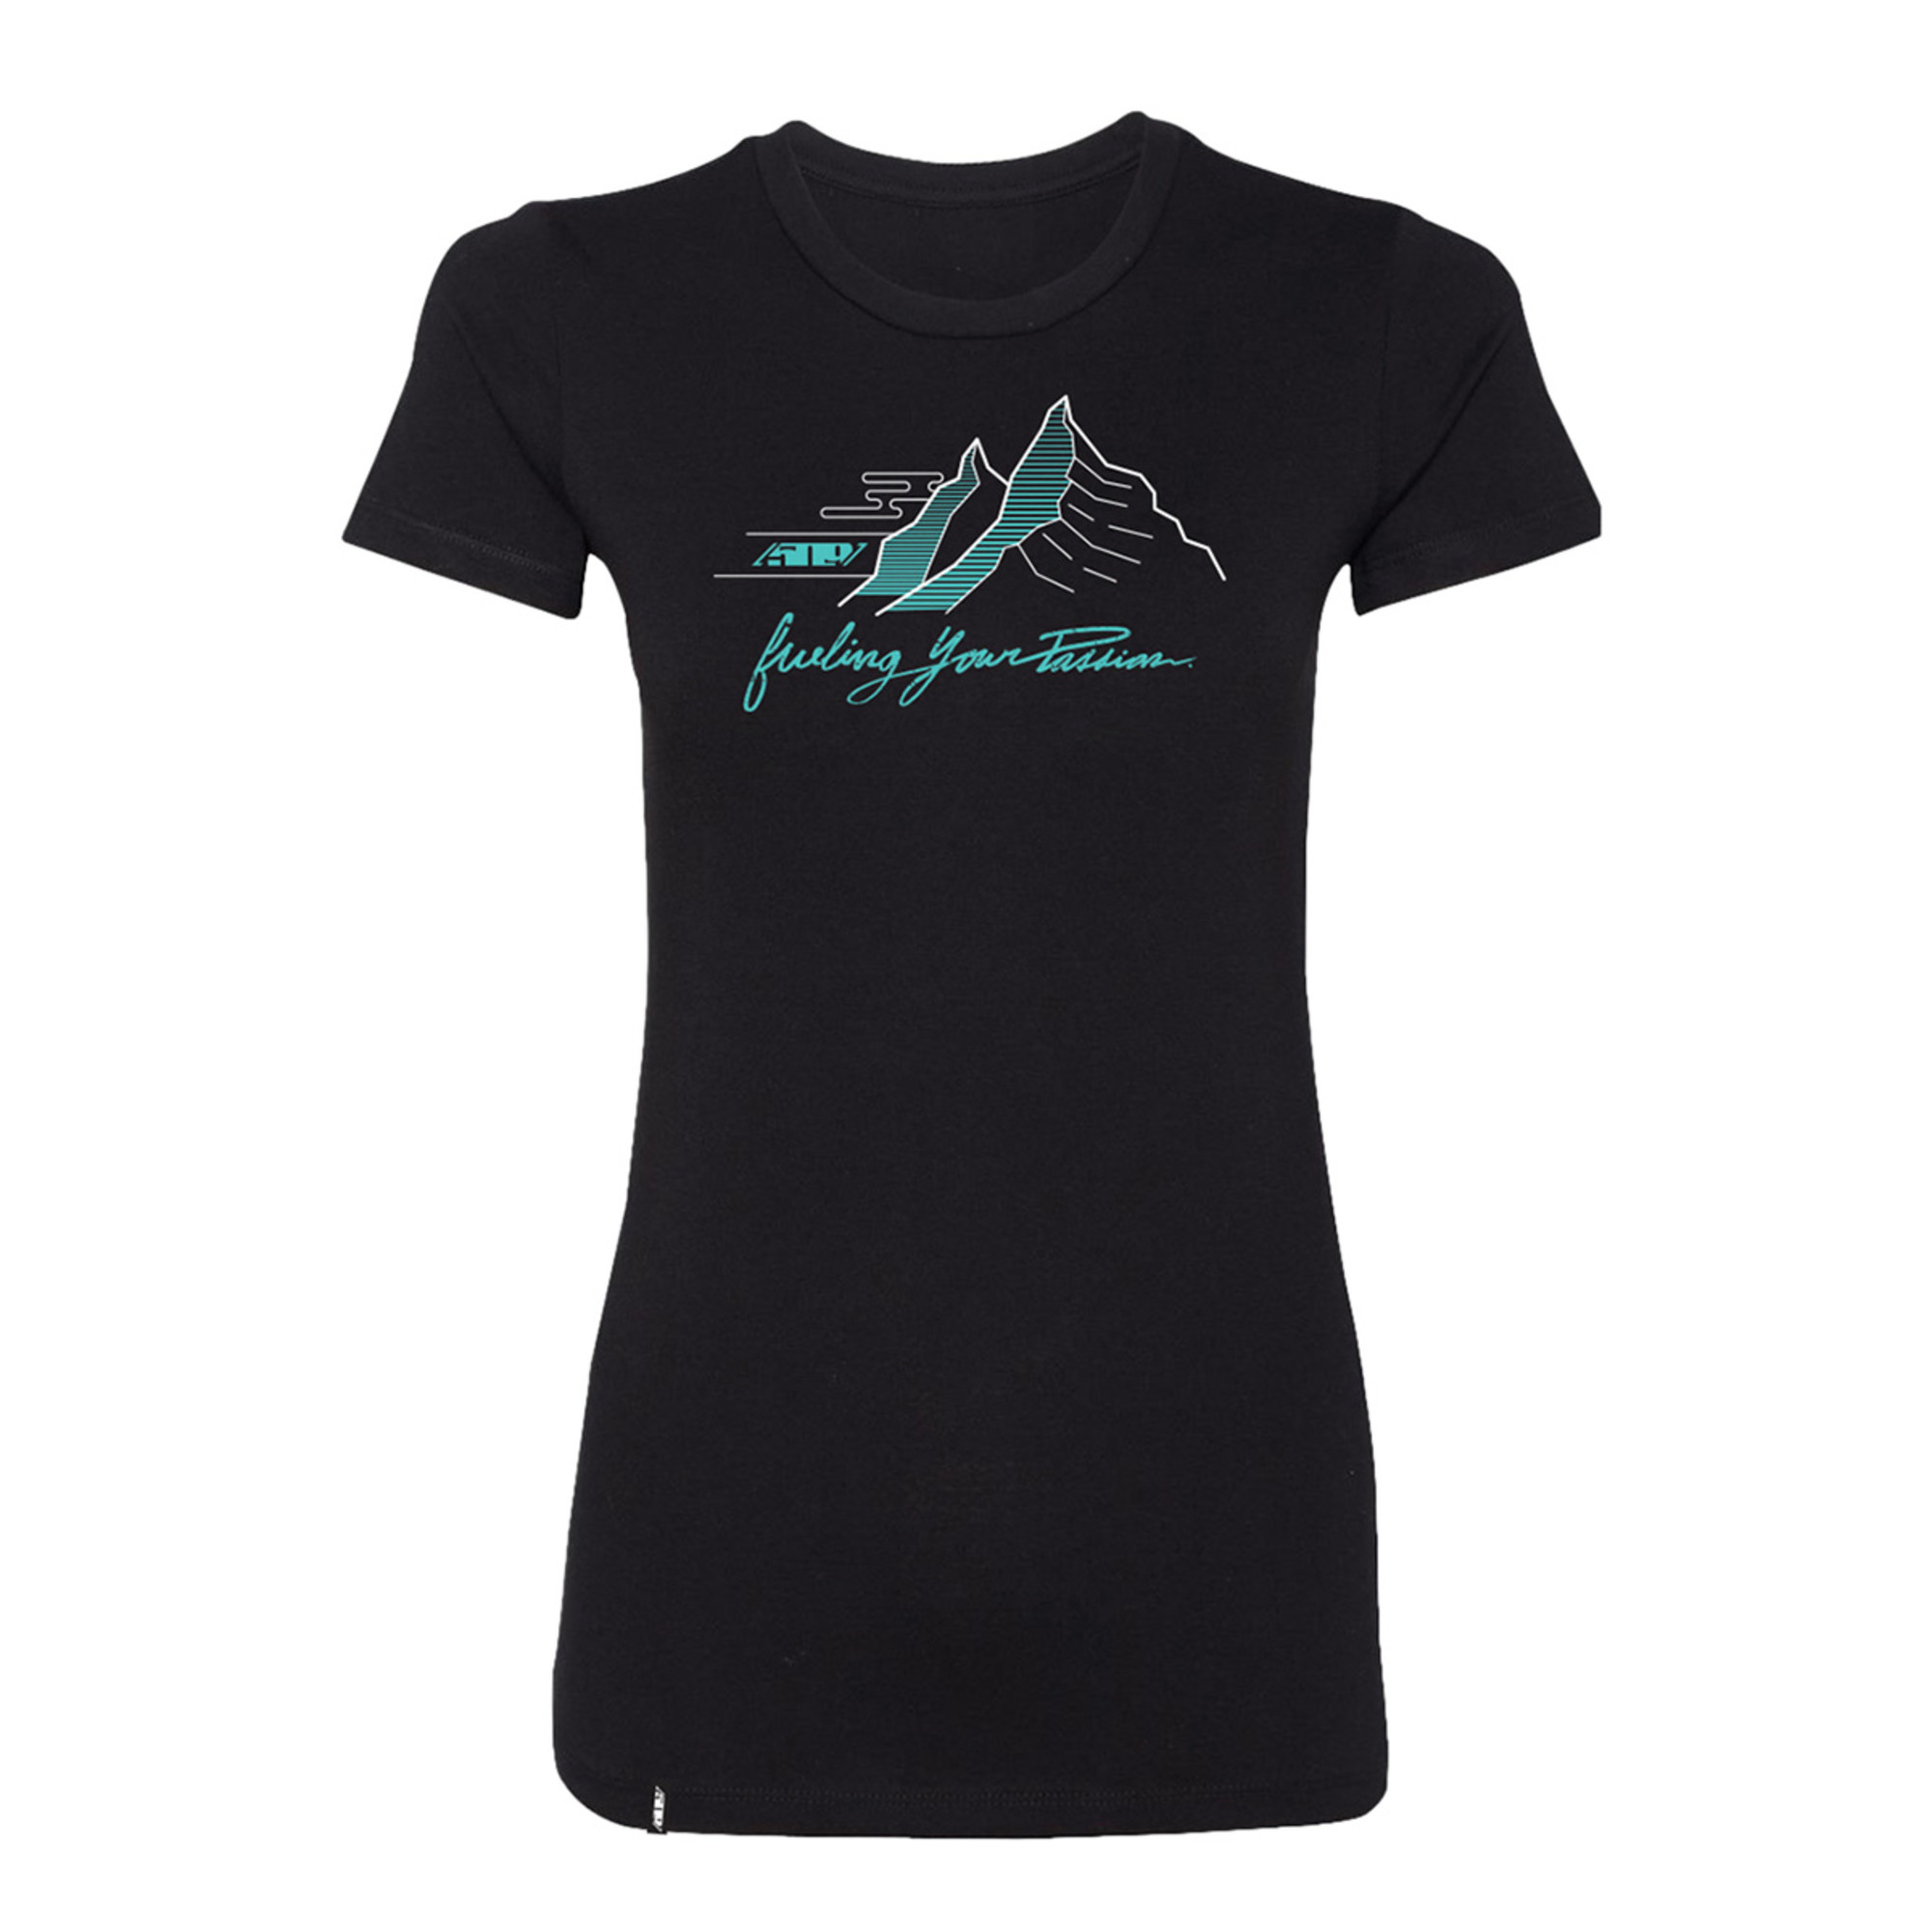 509 t-shirt shirts for womens spire tshirt